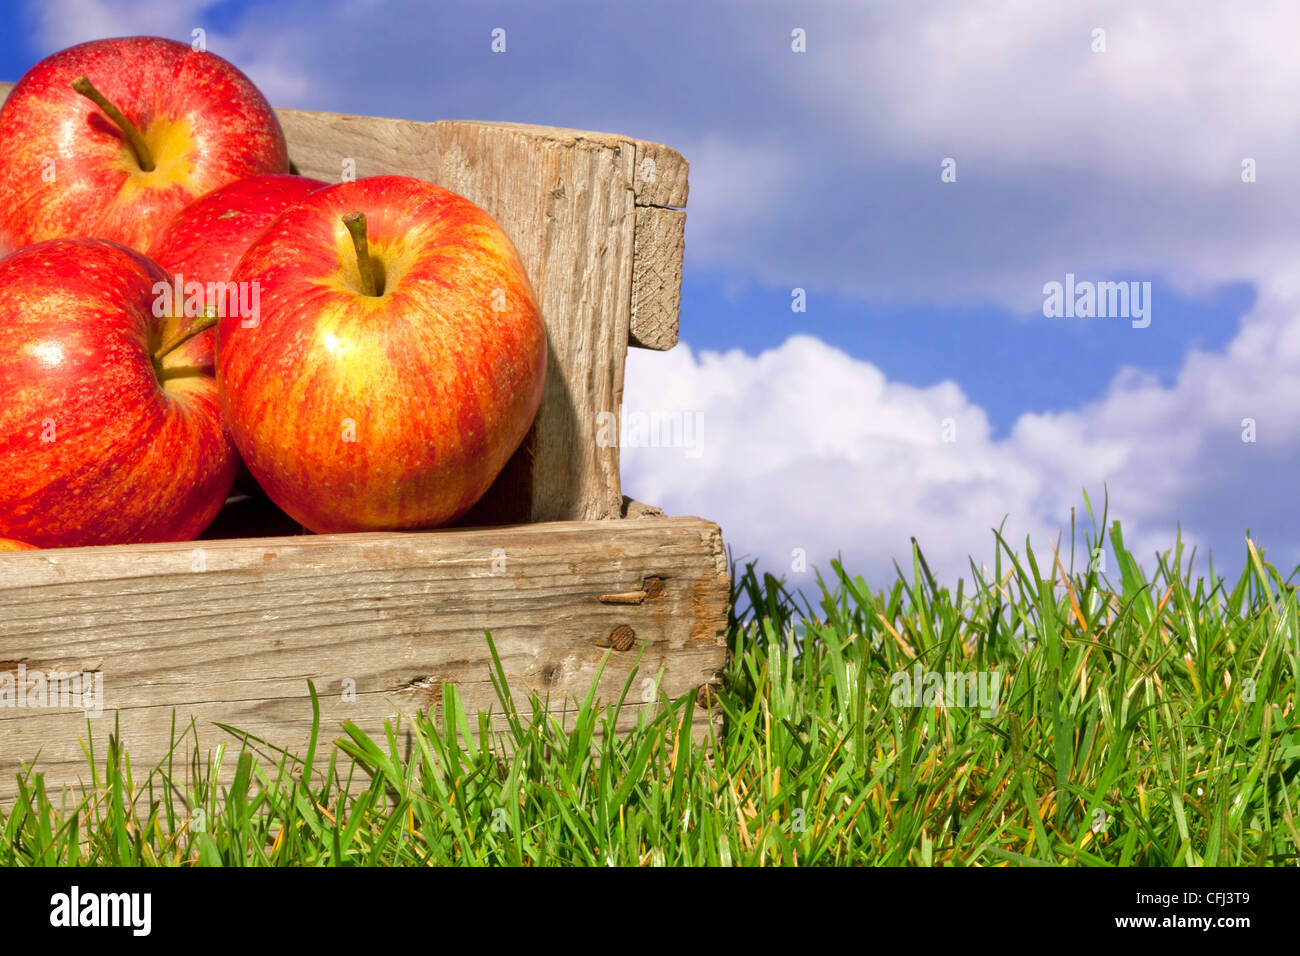 Todavía la vida foto del recién elegido manzanas rojas en una caja de madera sobre el césped contra un azul cielo nublado. Foto de stock